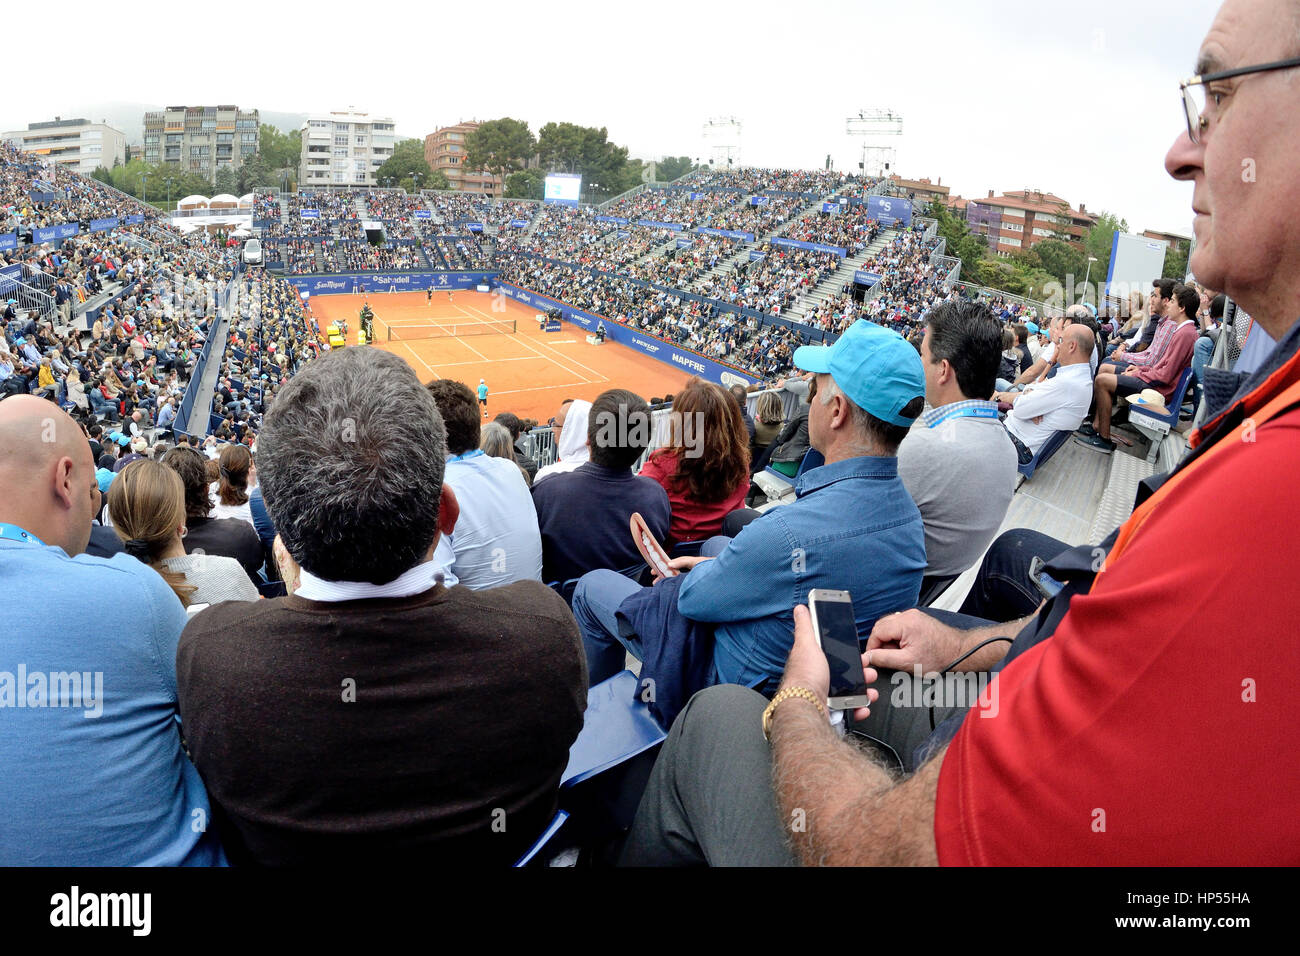 Barcelone - APR 26 : les spectateurs à l'ATP Open de Barcelone Banc Sabadell Conde de Godo Tournament le 26 avril 2015 à Barcelone, Espagne. Banque D'Images